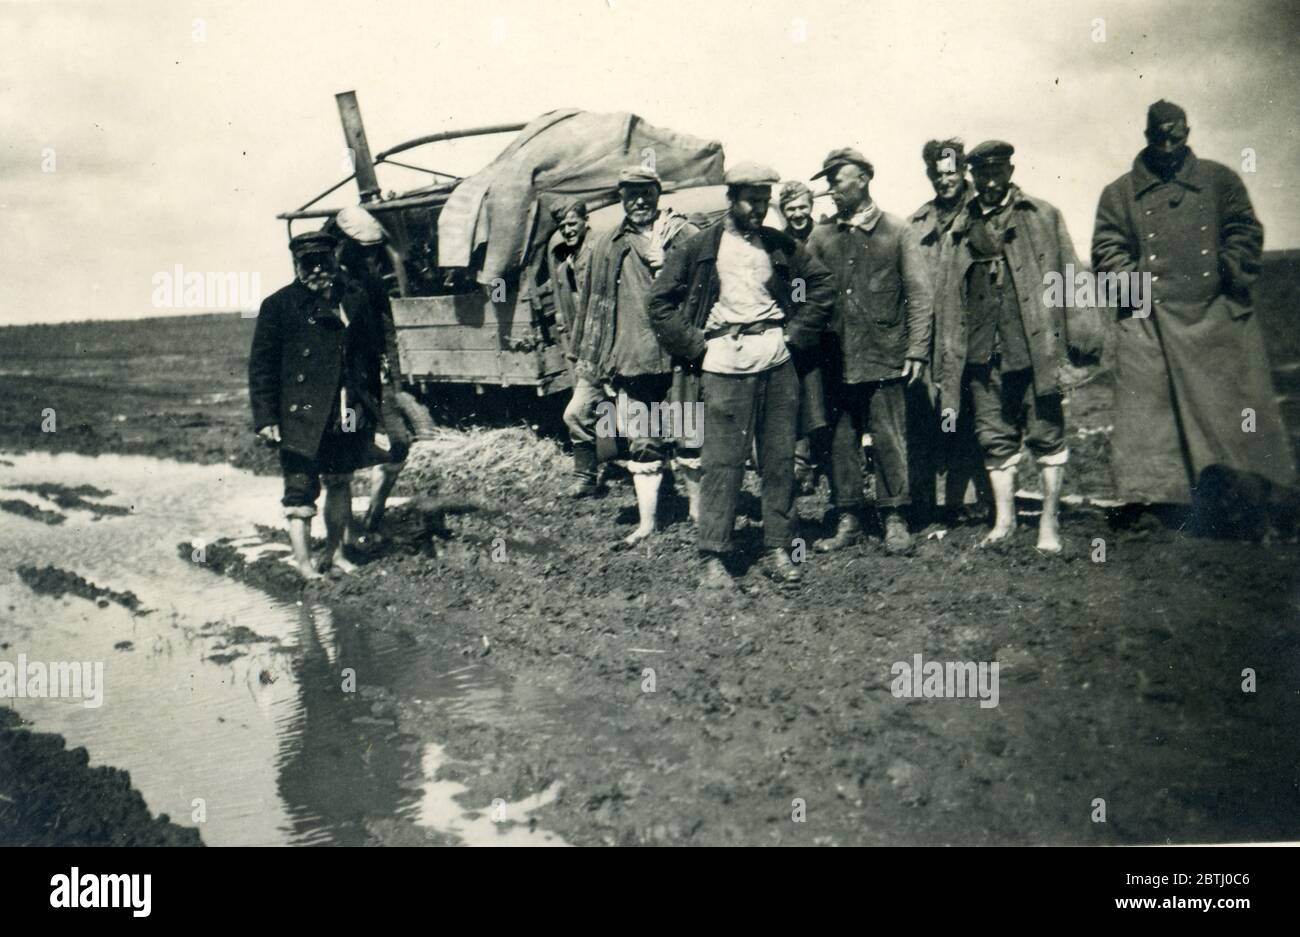 Deuxième Guerre mondiale / Seconde Guerre mondiale, probablement des soldats roumains ou hongrois en Russie, 1943 Banque D'Images